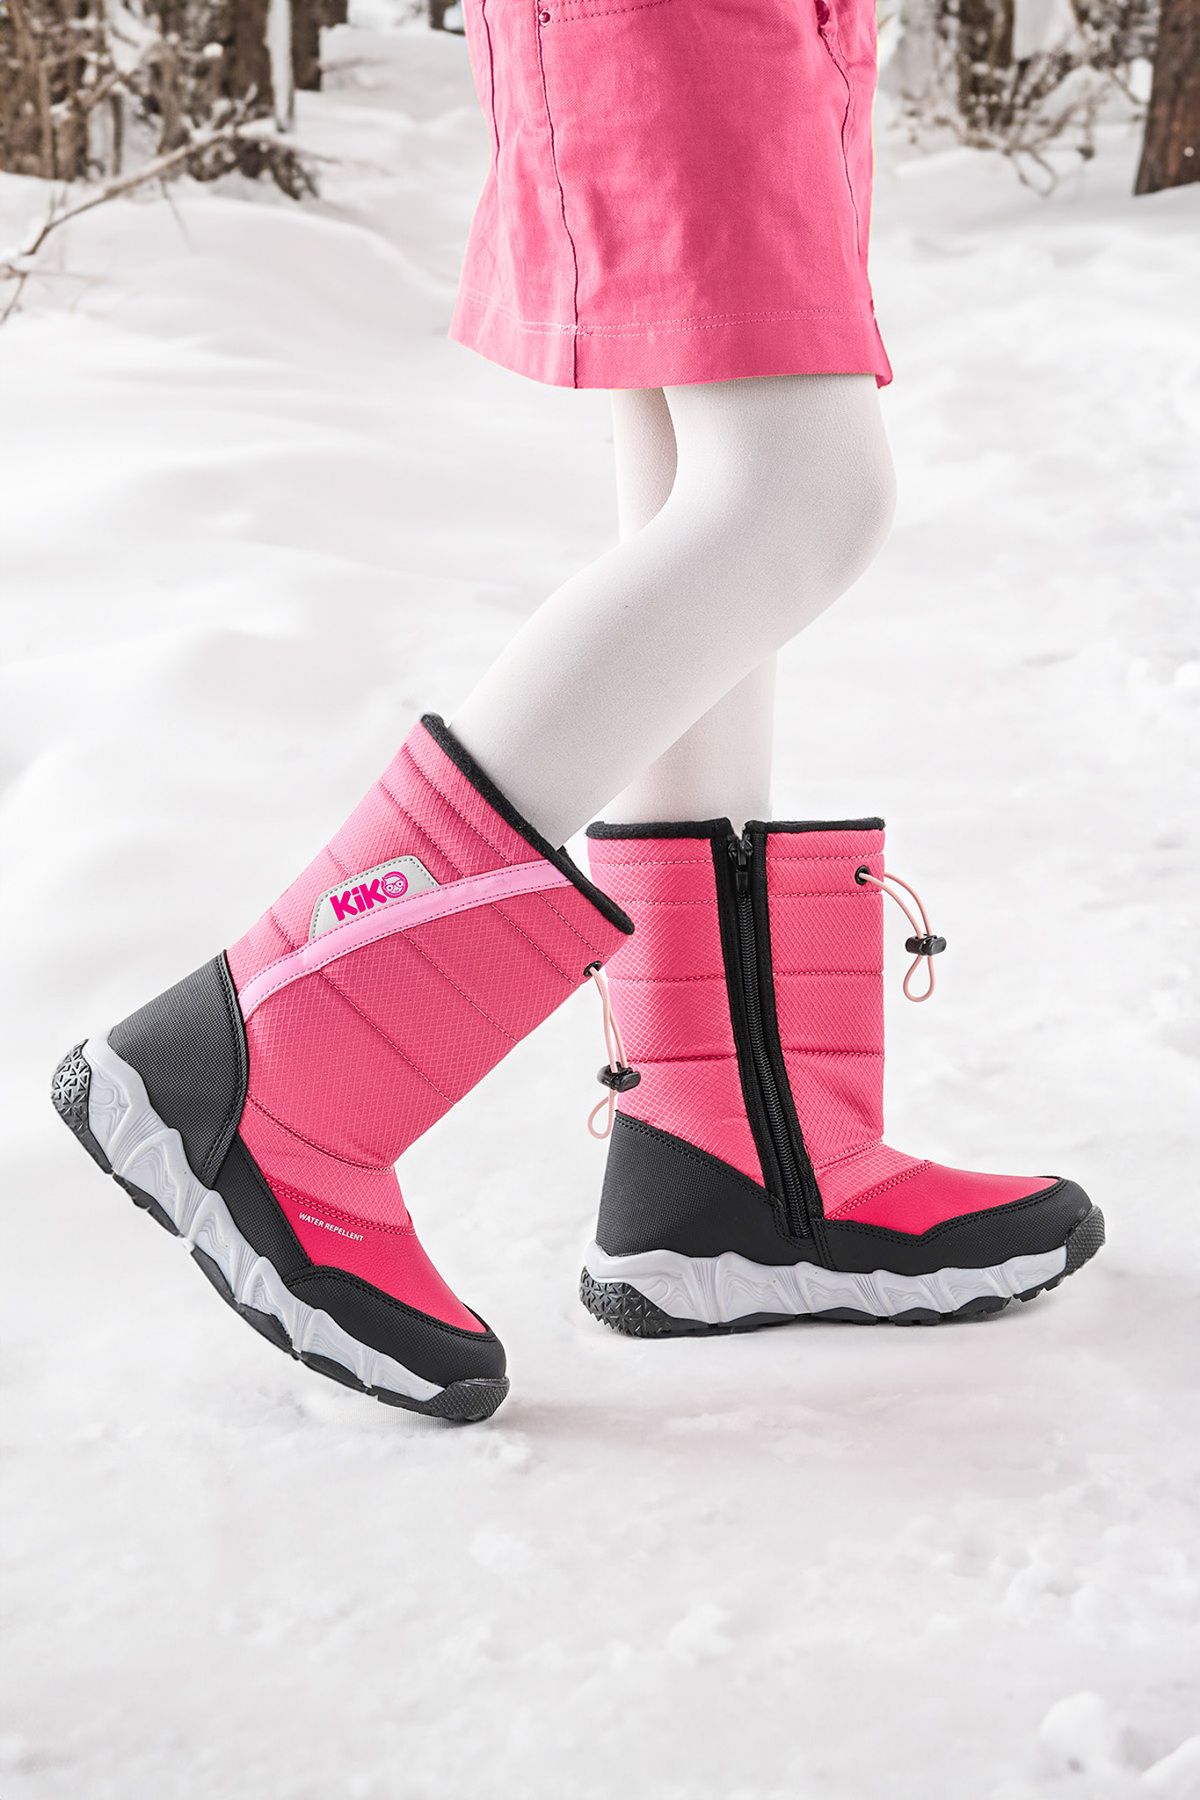 Kiko Kids Suya Dayanıklı Fermuarlı Kız/erkek Çocuk Kar Bot Ayakkabı